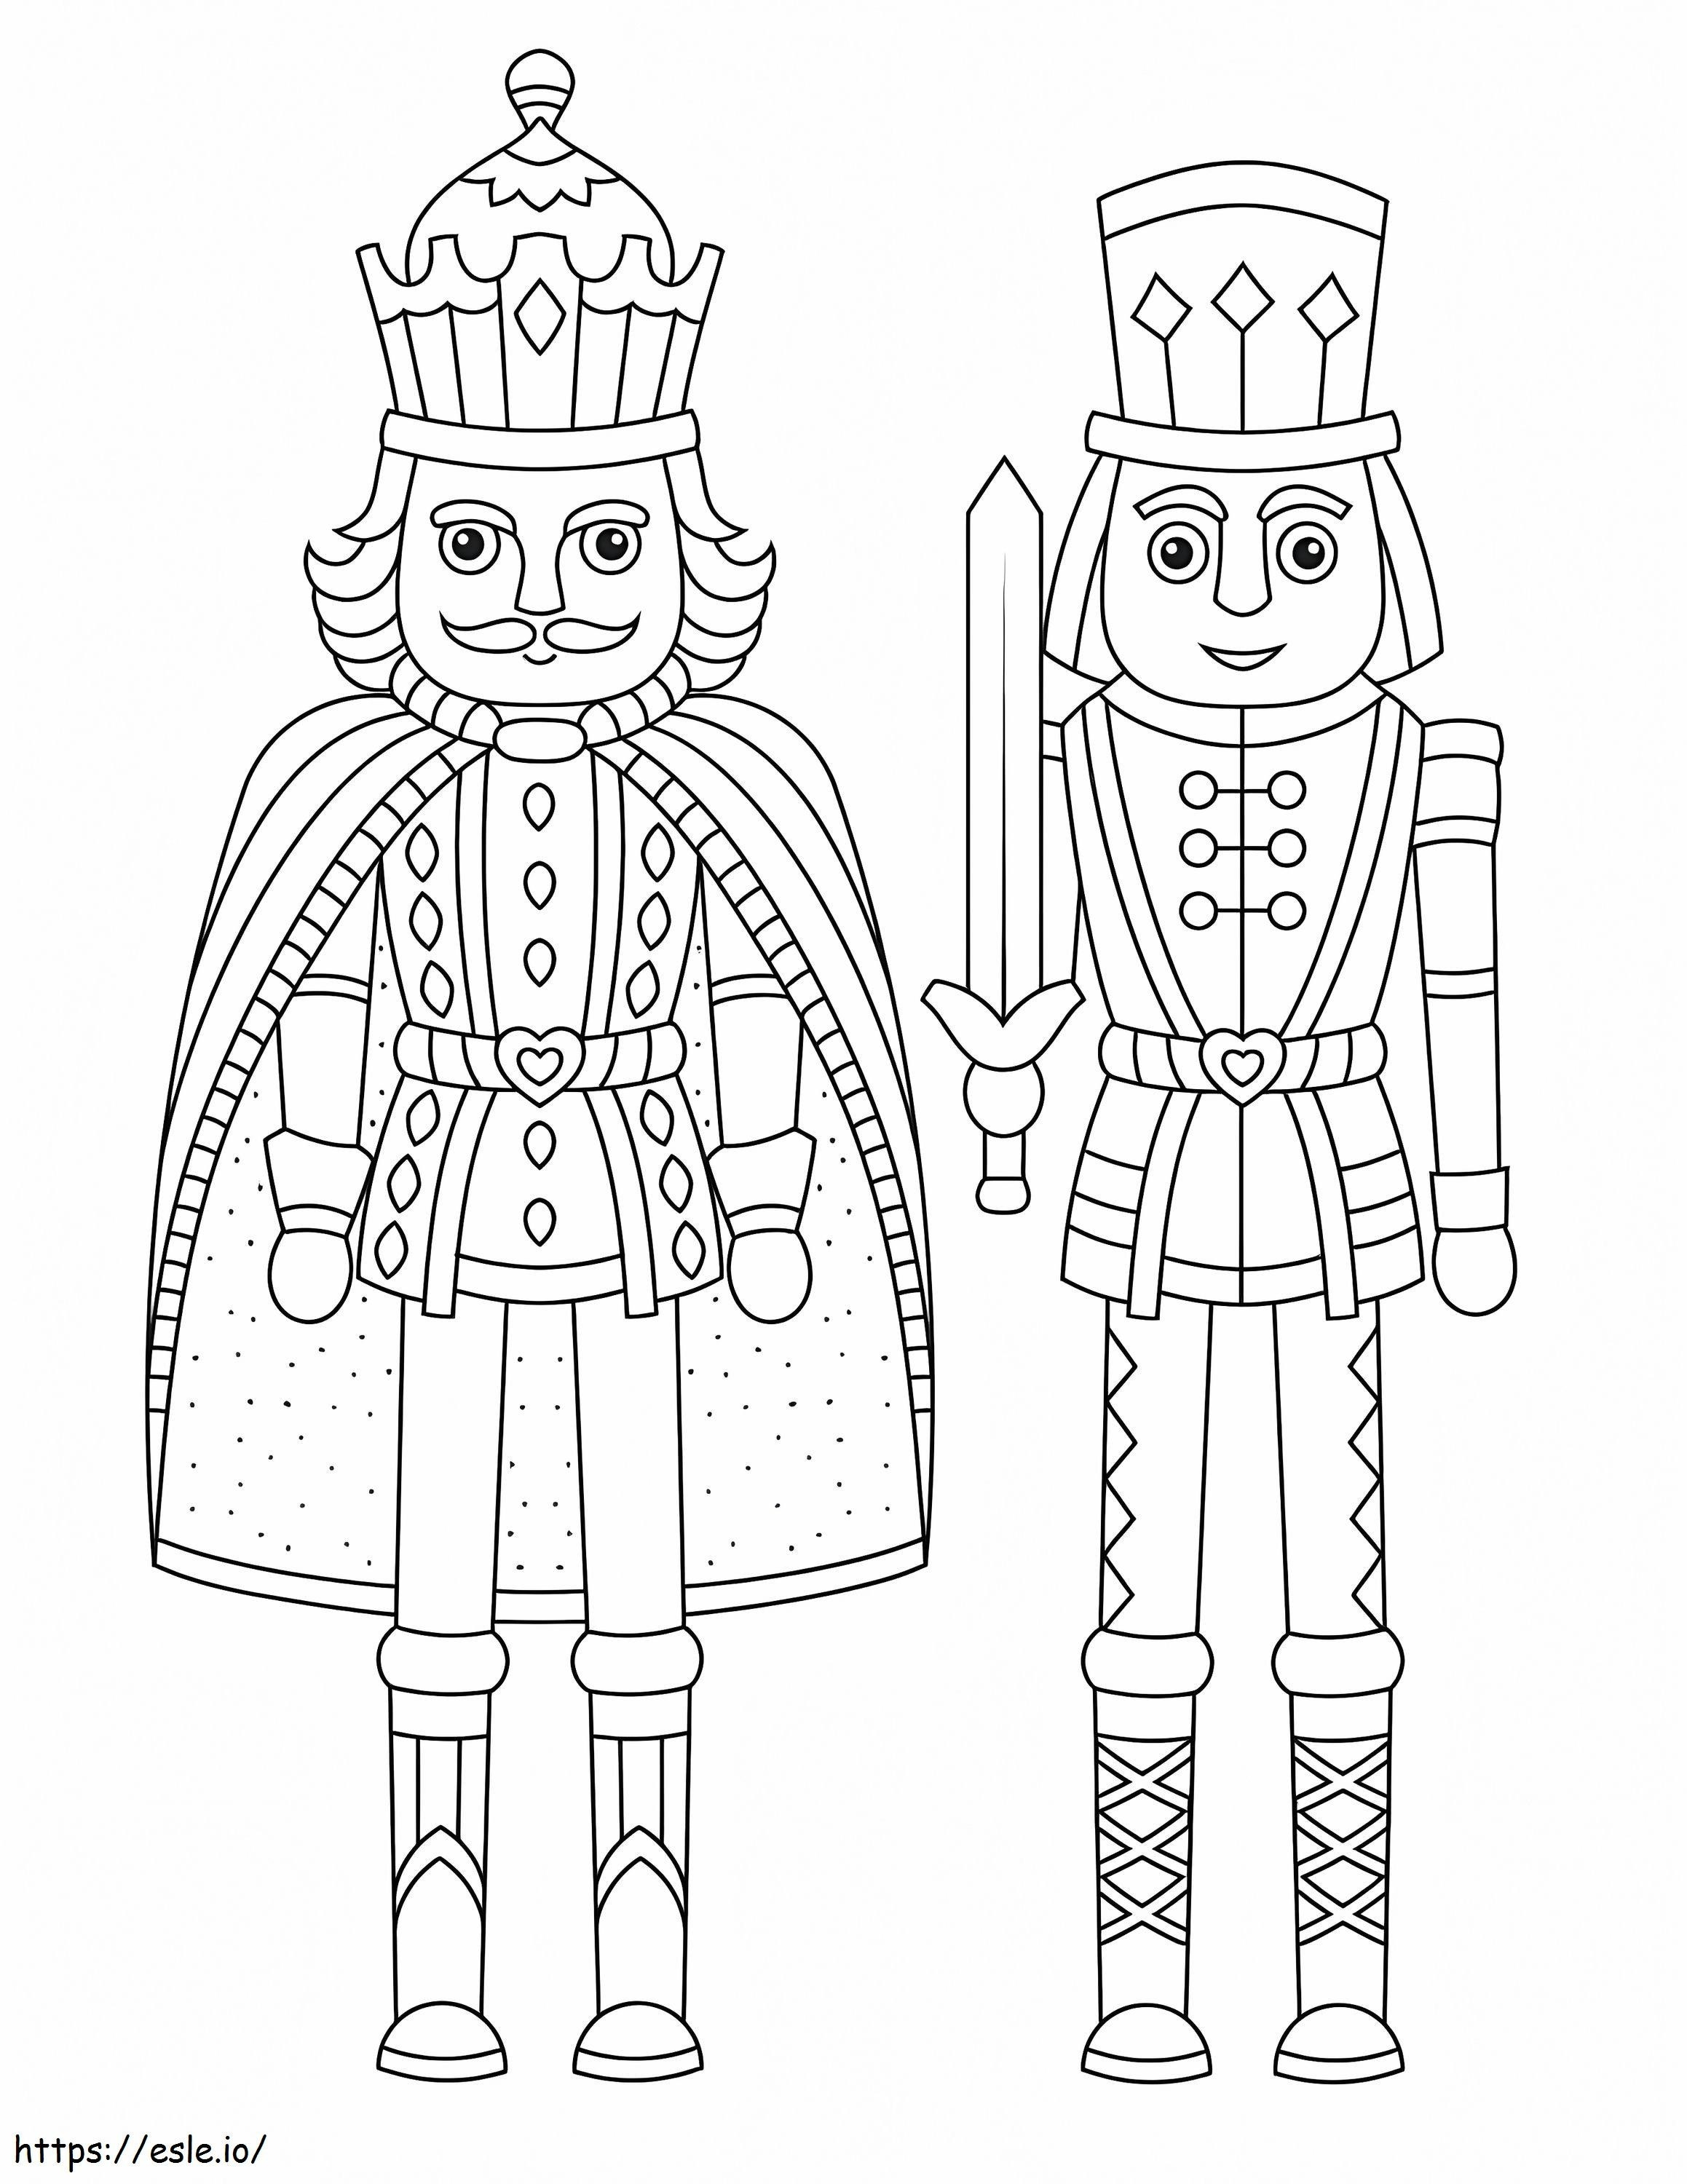 Regele și Cavalerul Spărgătorul de Nuci de colorat